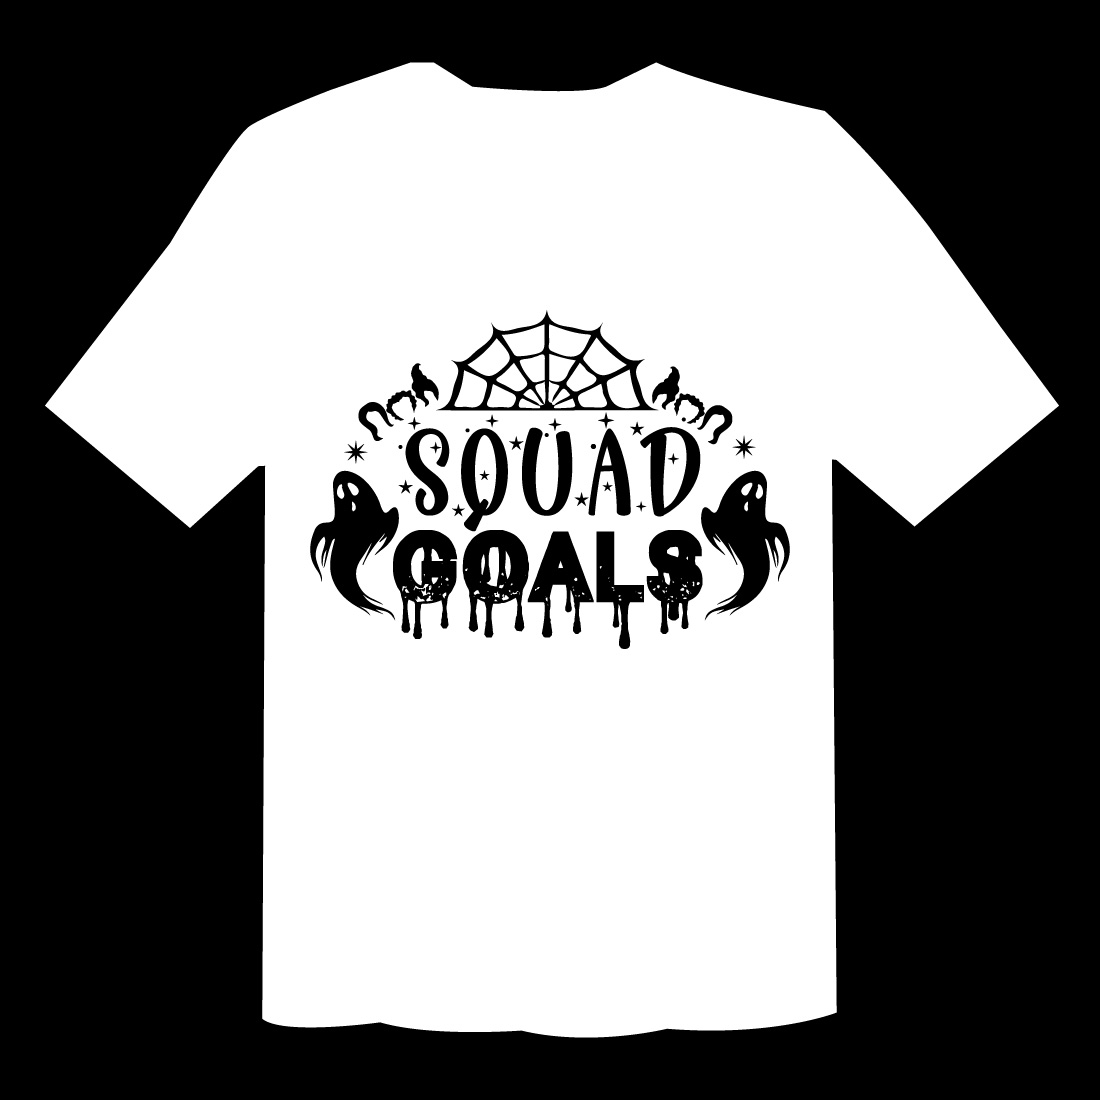 Squad Goals T Shirt Cut File preview image.